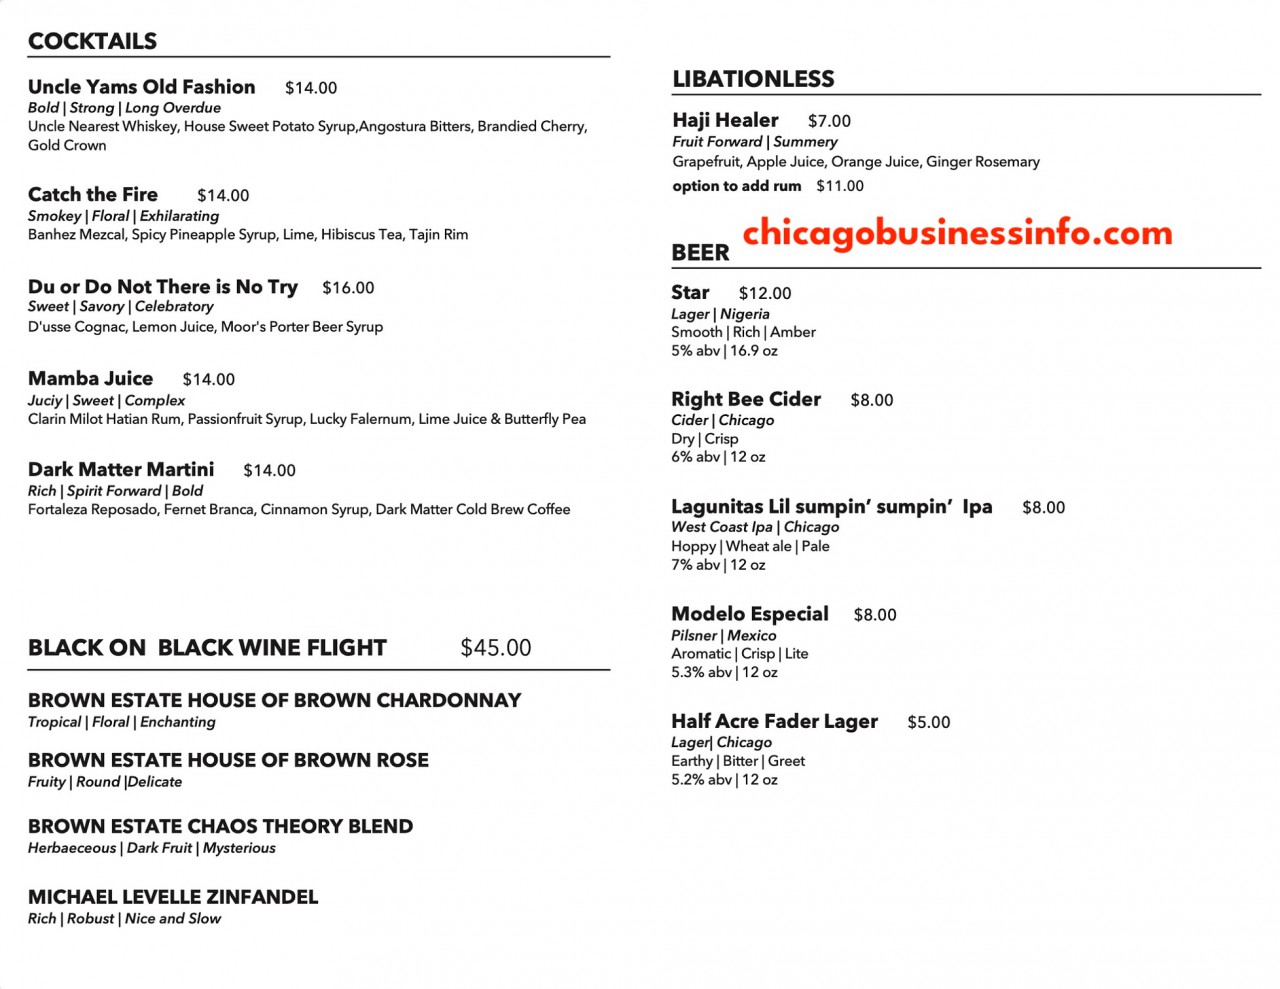 Bronzeville winery chicago menu 1